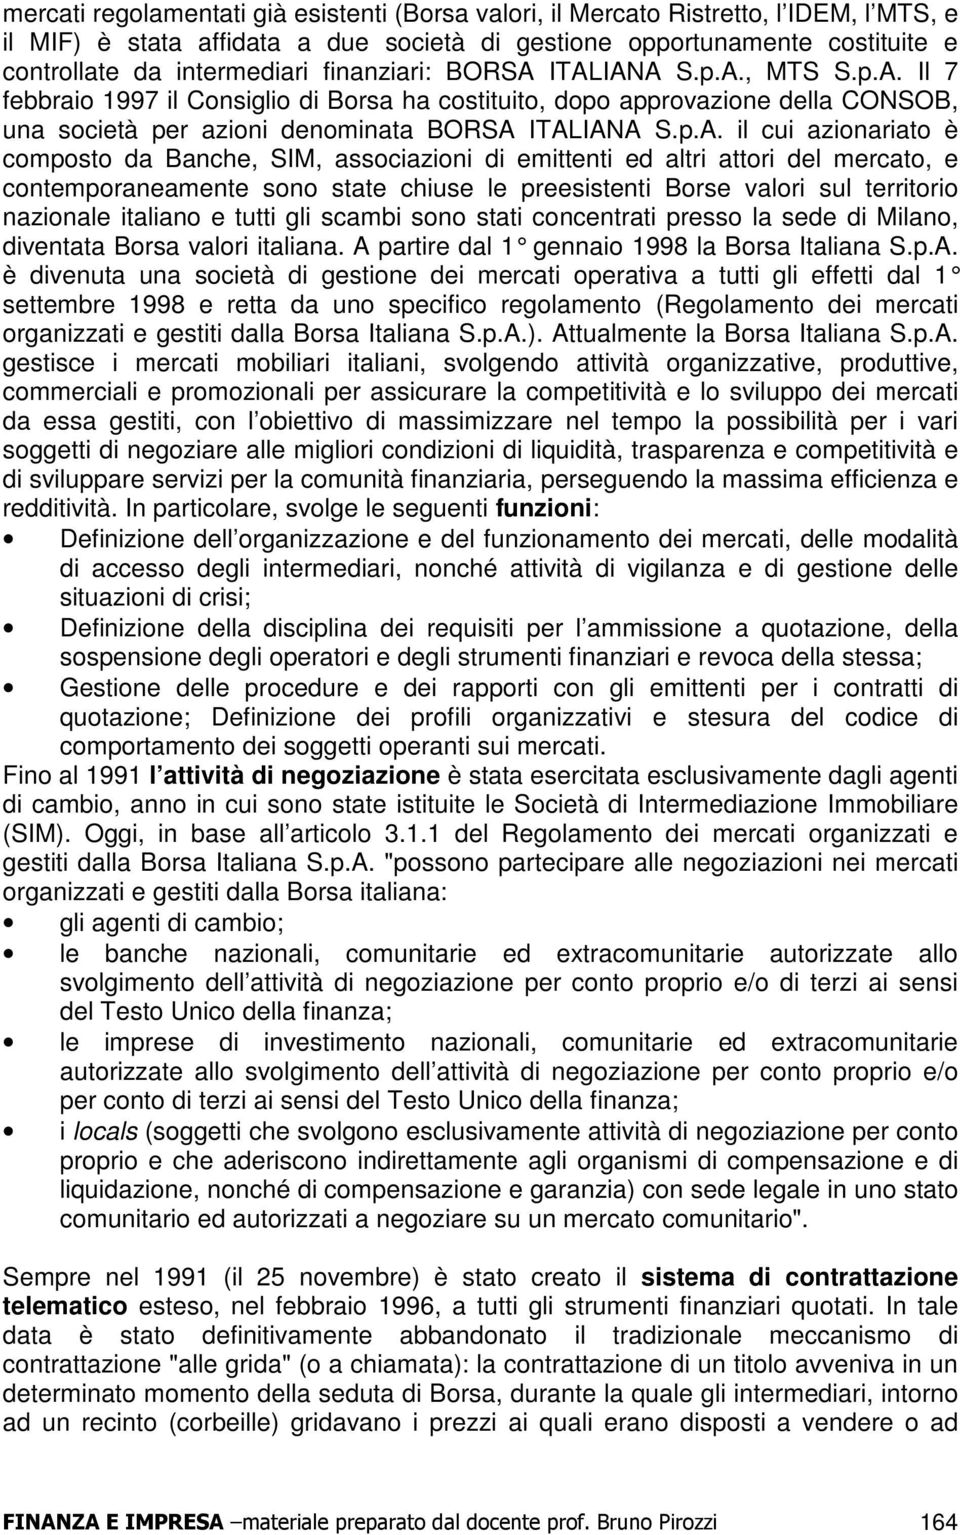 ITALIANA S.p.A., MTS S.p.A. Il 7 febbraio 1997 il Consiglio di Borsa ha costituito, dopo approvazione della CONSOB, una società per azioni denominata BORSA ITALIANA S.p.A. il cui azionariato è